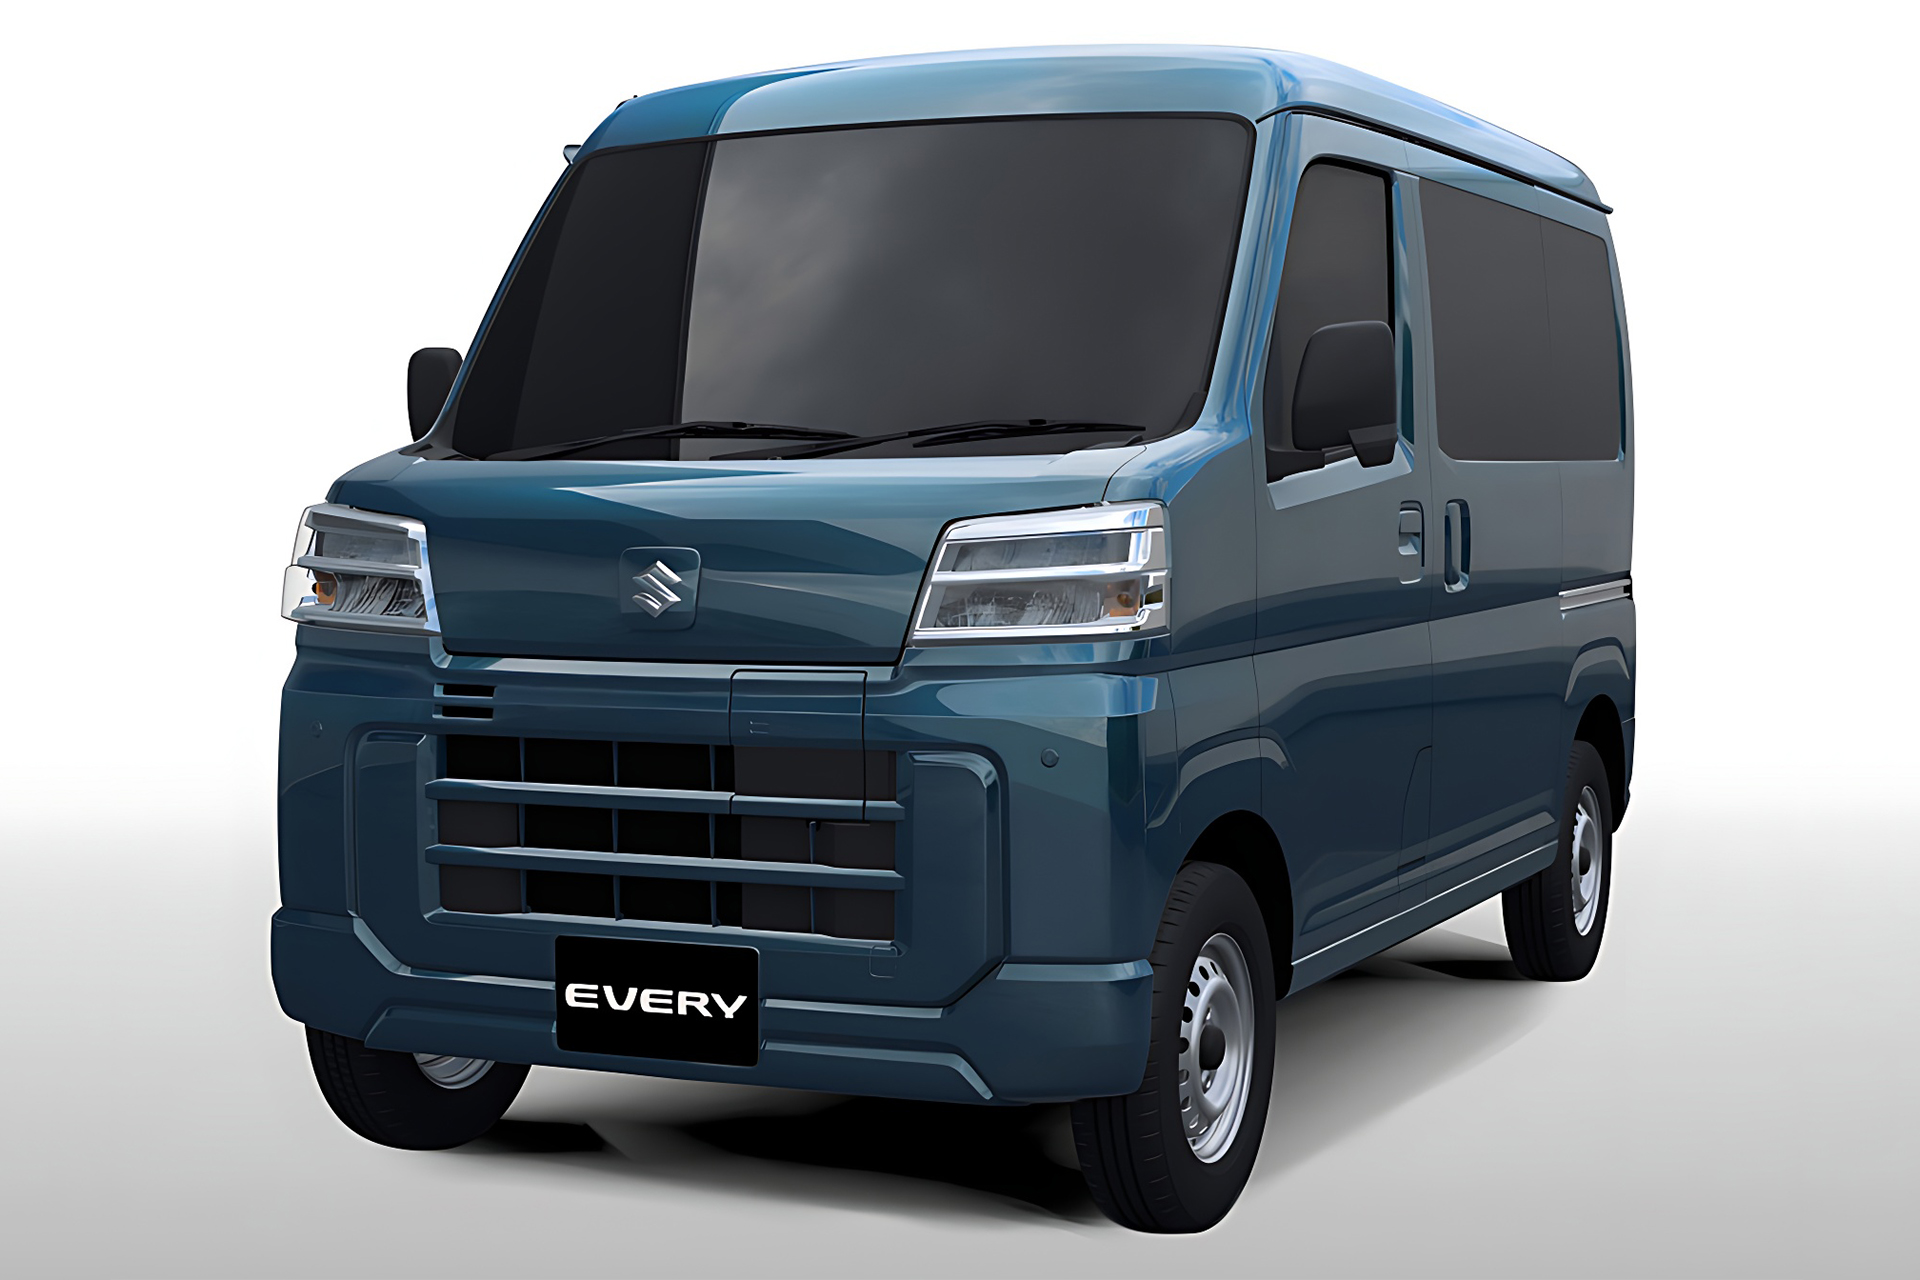 Gigantes japonesas, Toyota e Suzuki paz parceria para lançar minivans elétricas como até 200 km de autonomia